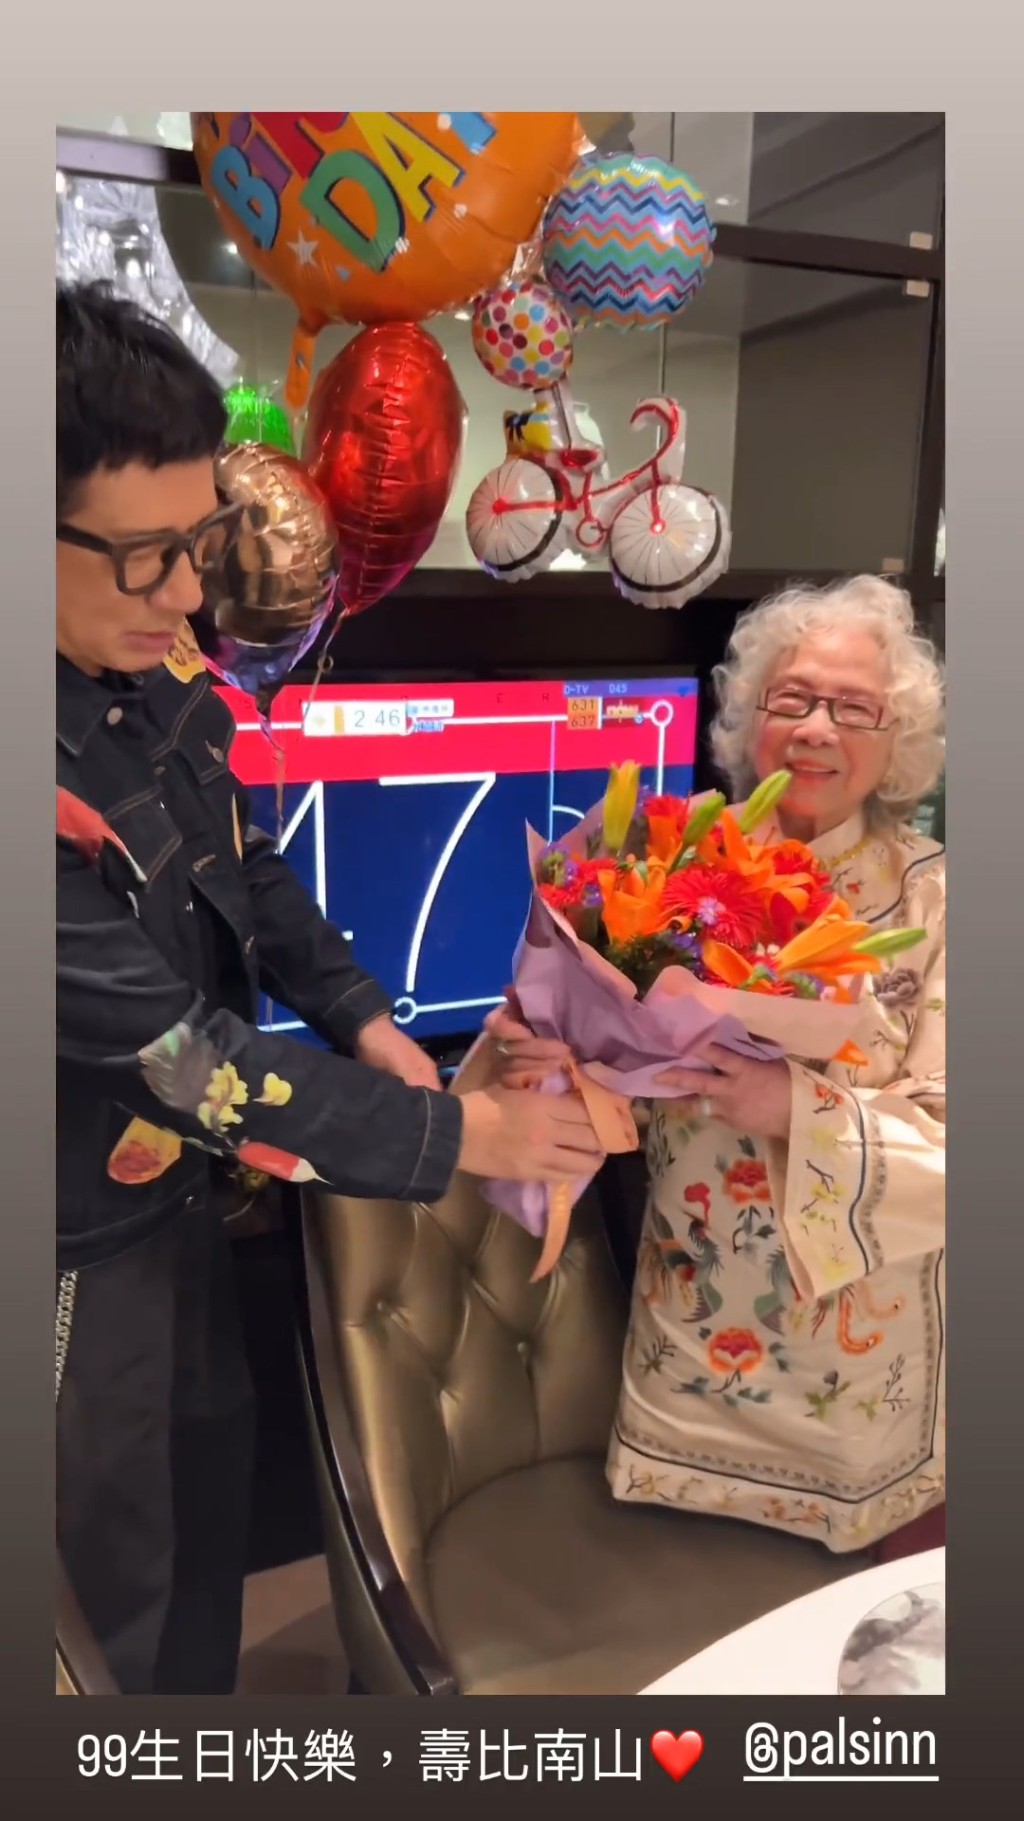 单立文准备鲜花贺母亲89岁生日。